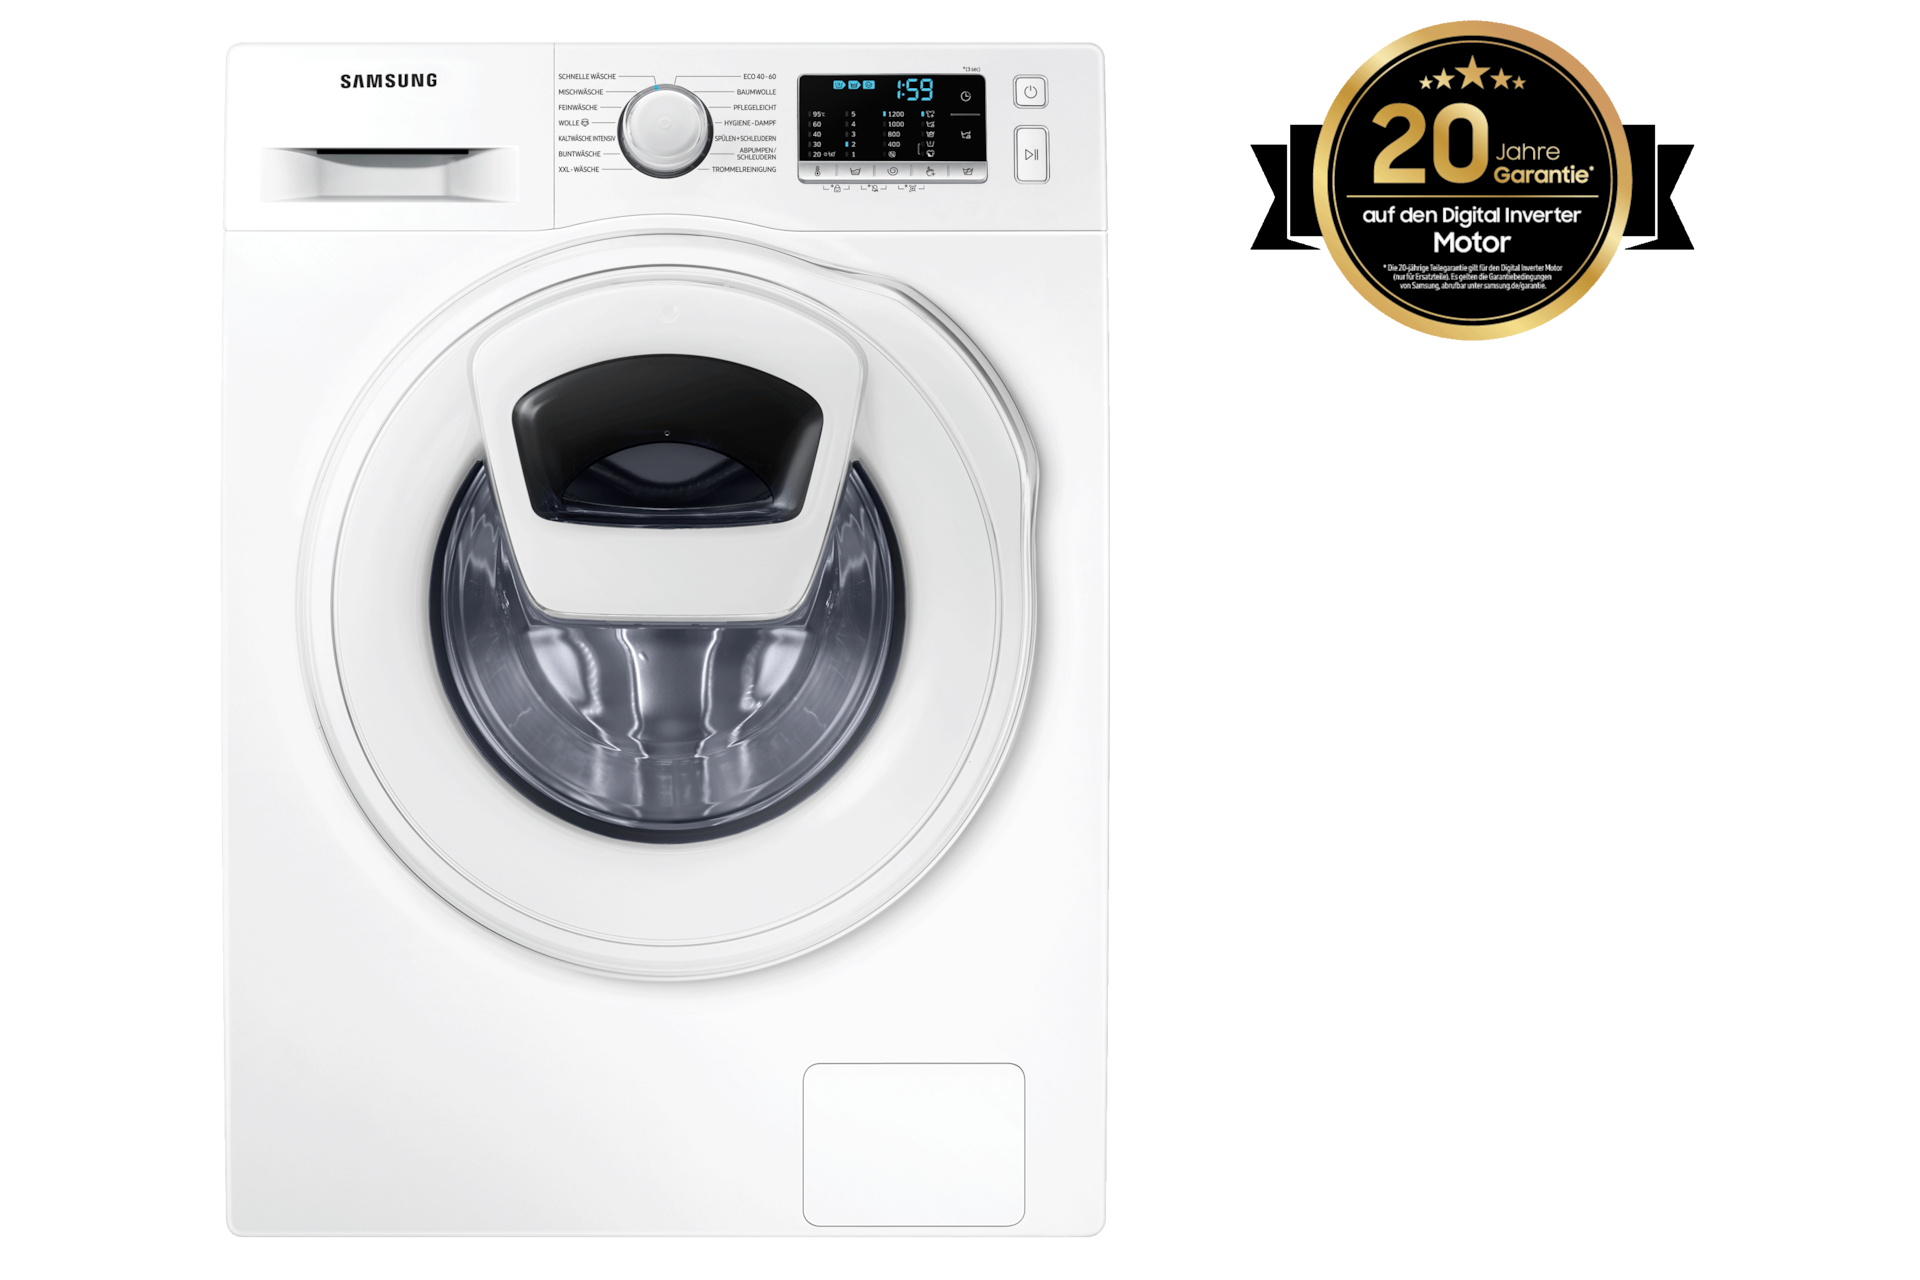 Waschmaschine AddWash™ 8 kg kaufen (WW8NK52K0XW/EG) | Samsung DE